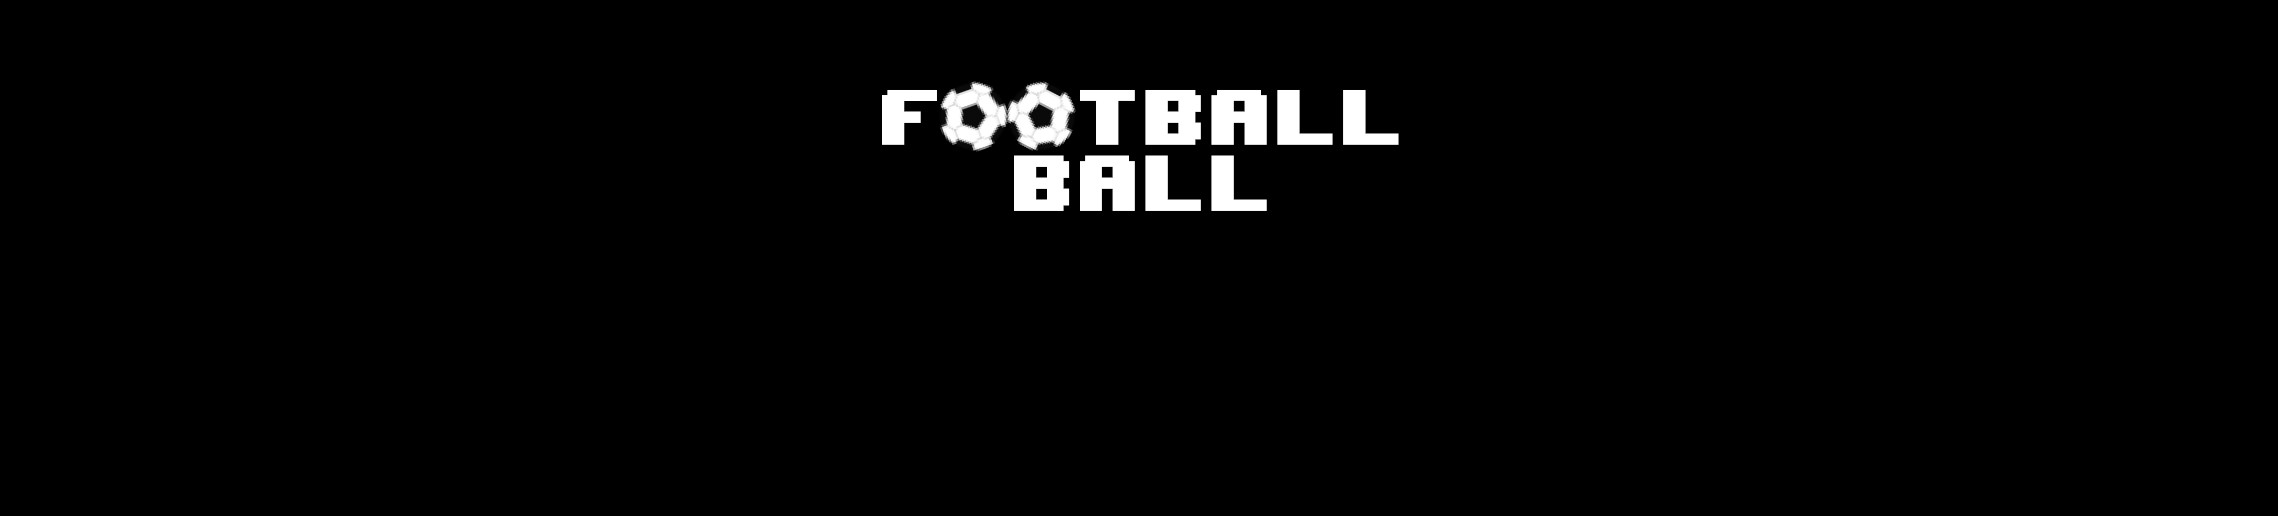 Foobtall Ball Baner